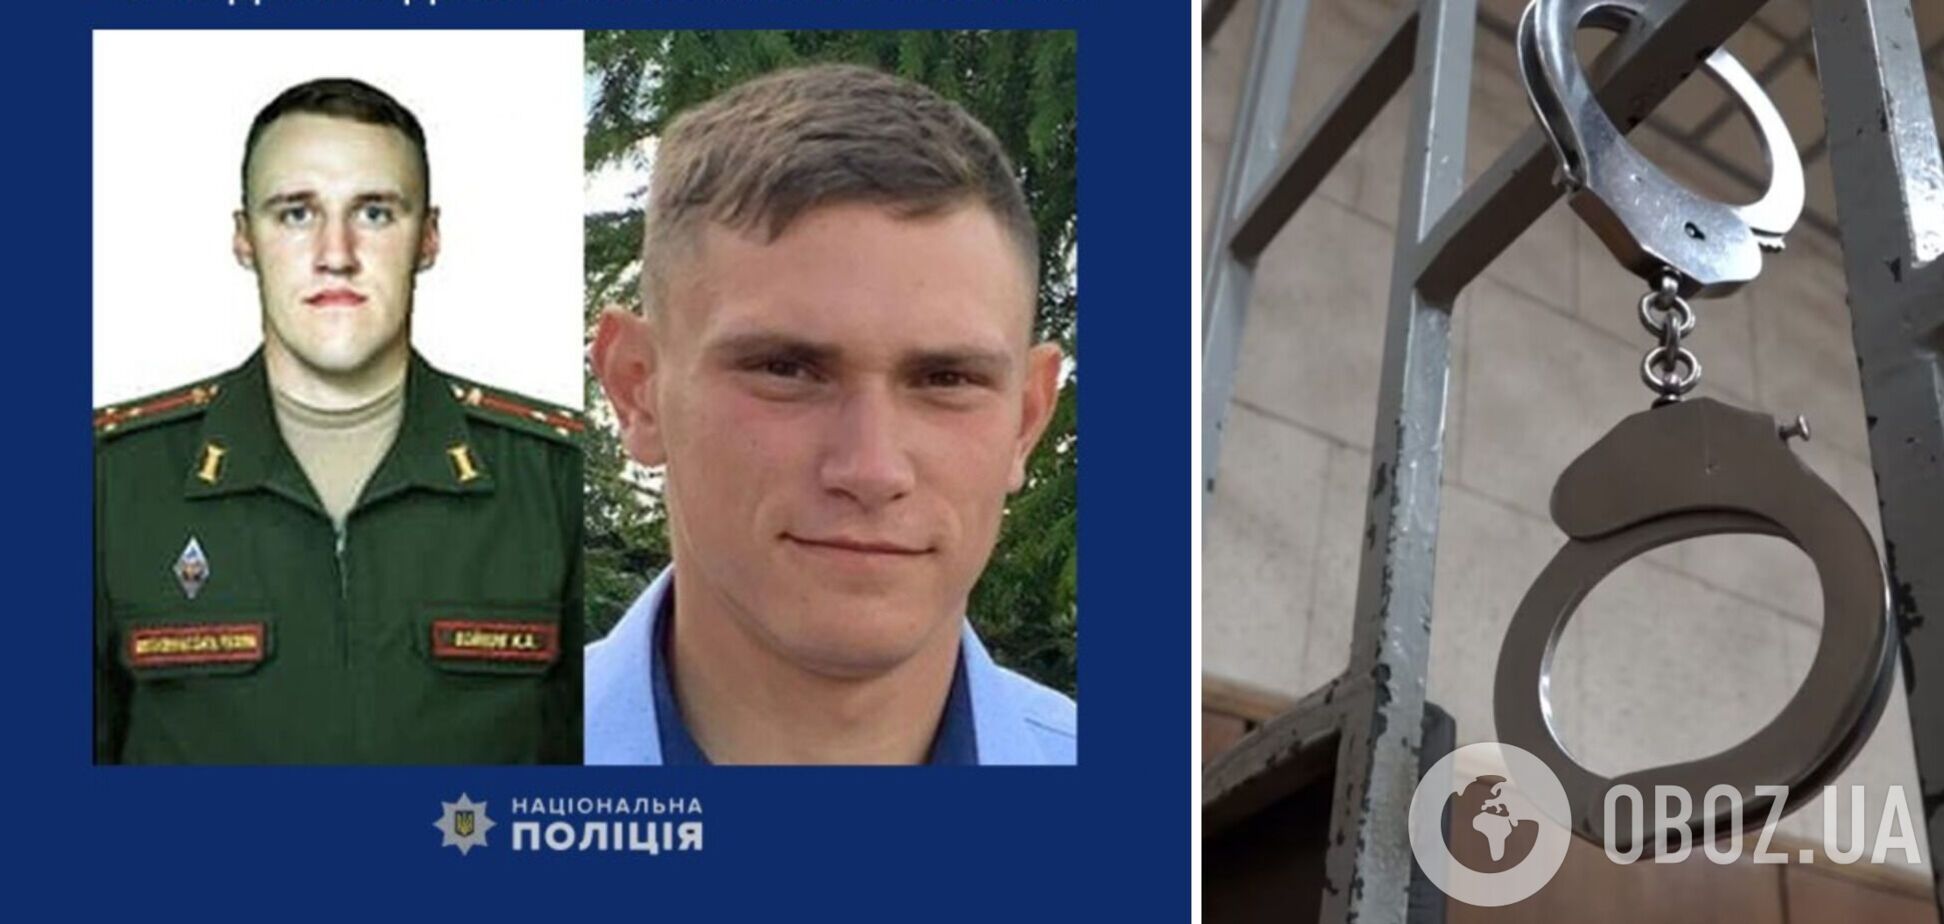 Убивали украинских гражданских: двух российских военных приговорили к пожизненному лишению свободы. Фото